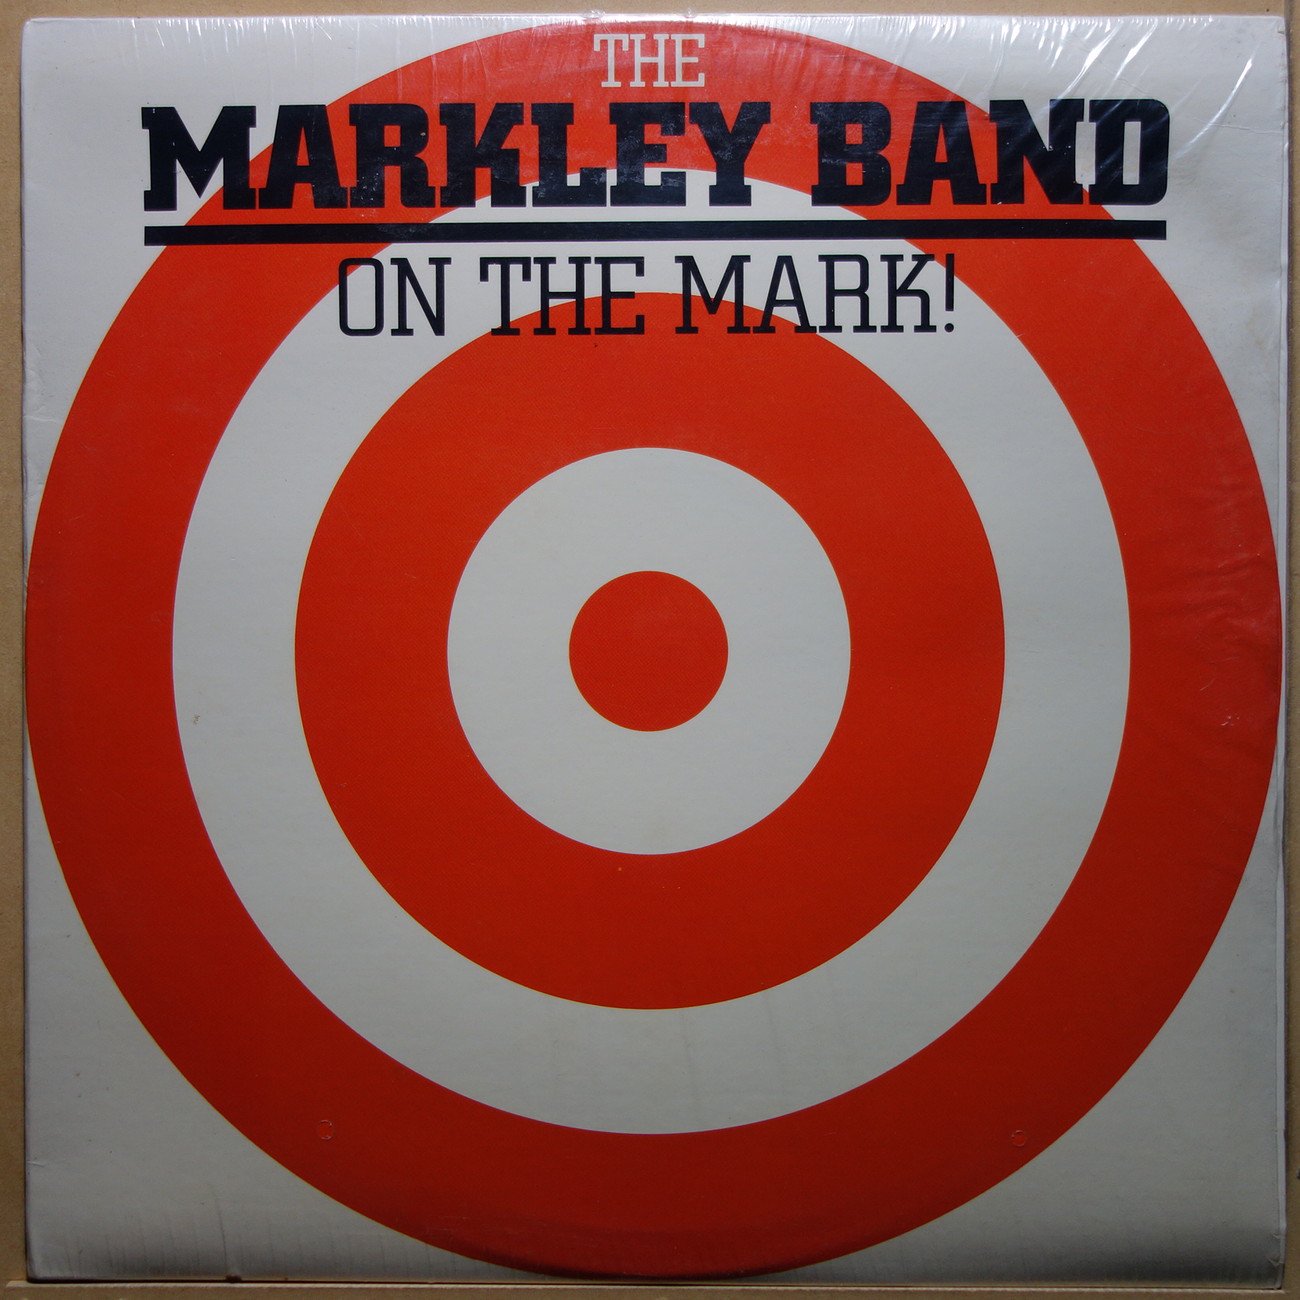 The Markley Band On The Mark! Vinylian Vintage Vinyl Record Shop